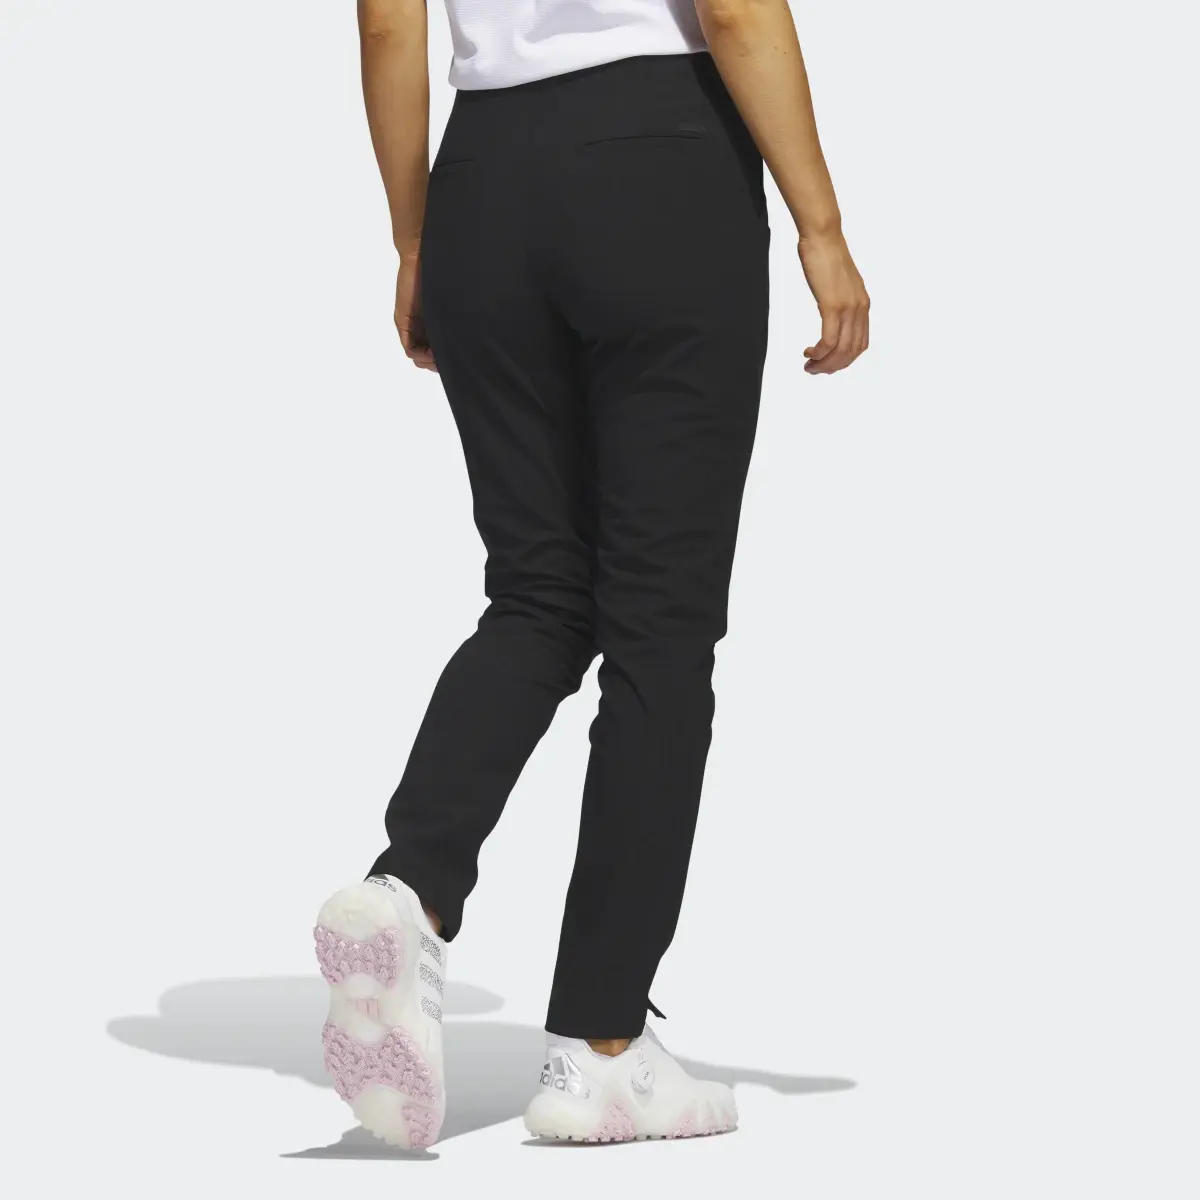 Adidas Pintuck Pull-On Pants. 2